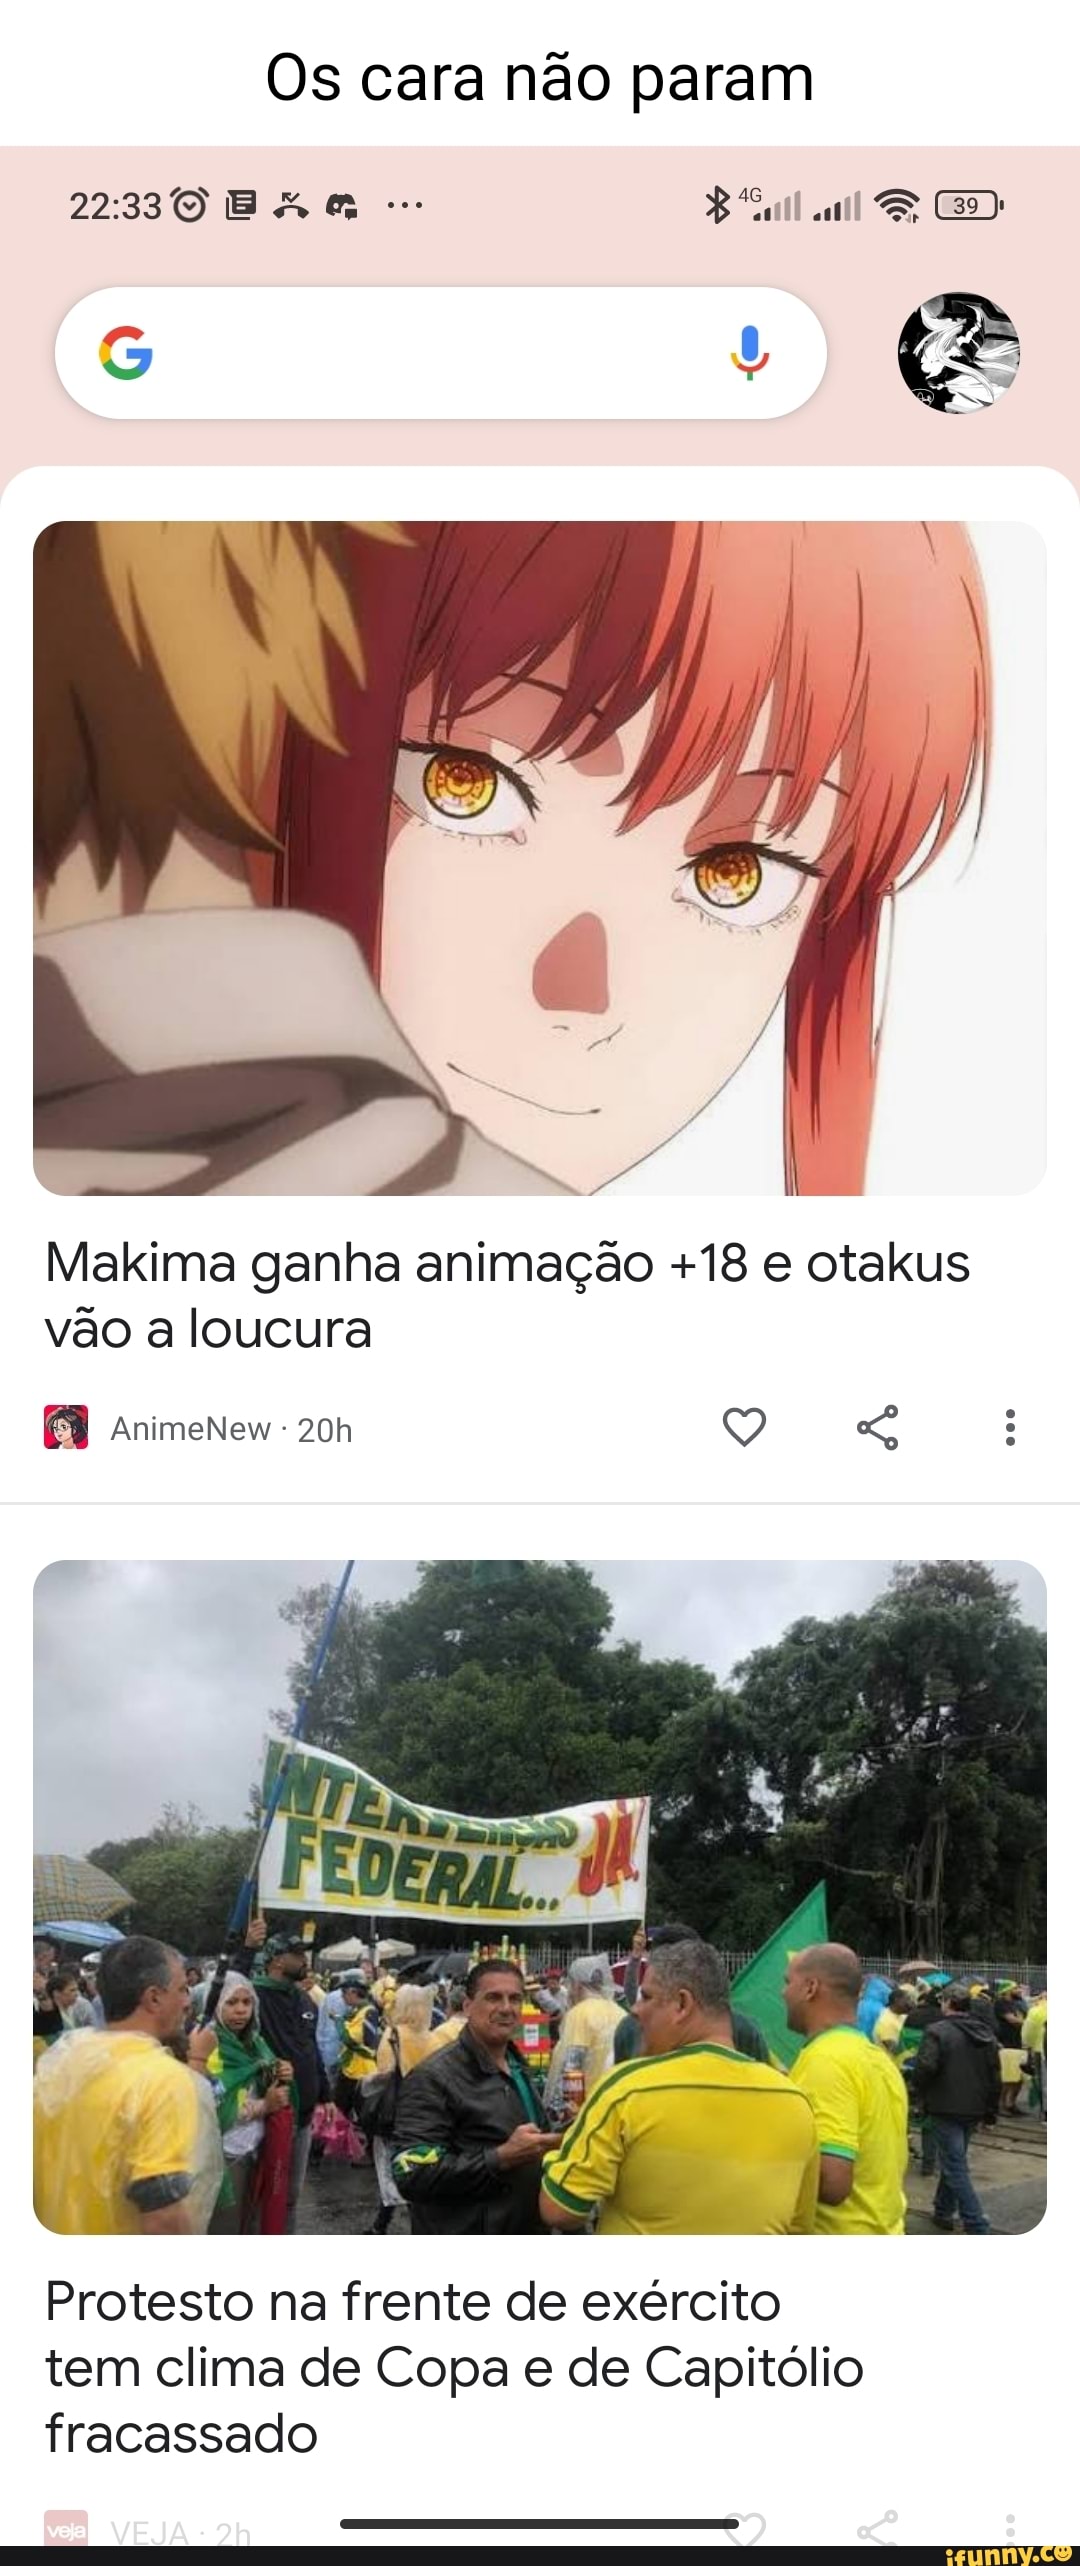 Makima ganha animação +18 e otakus vão a loucura - AnimeNew